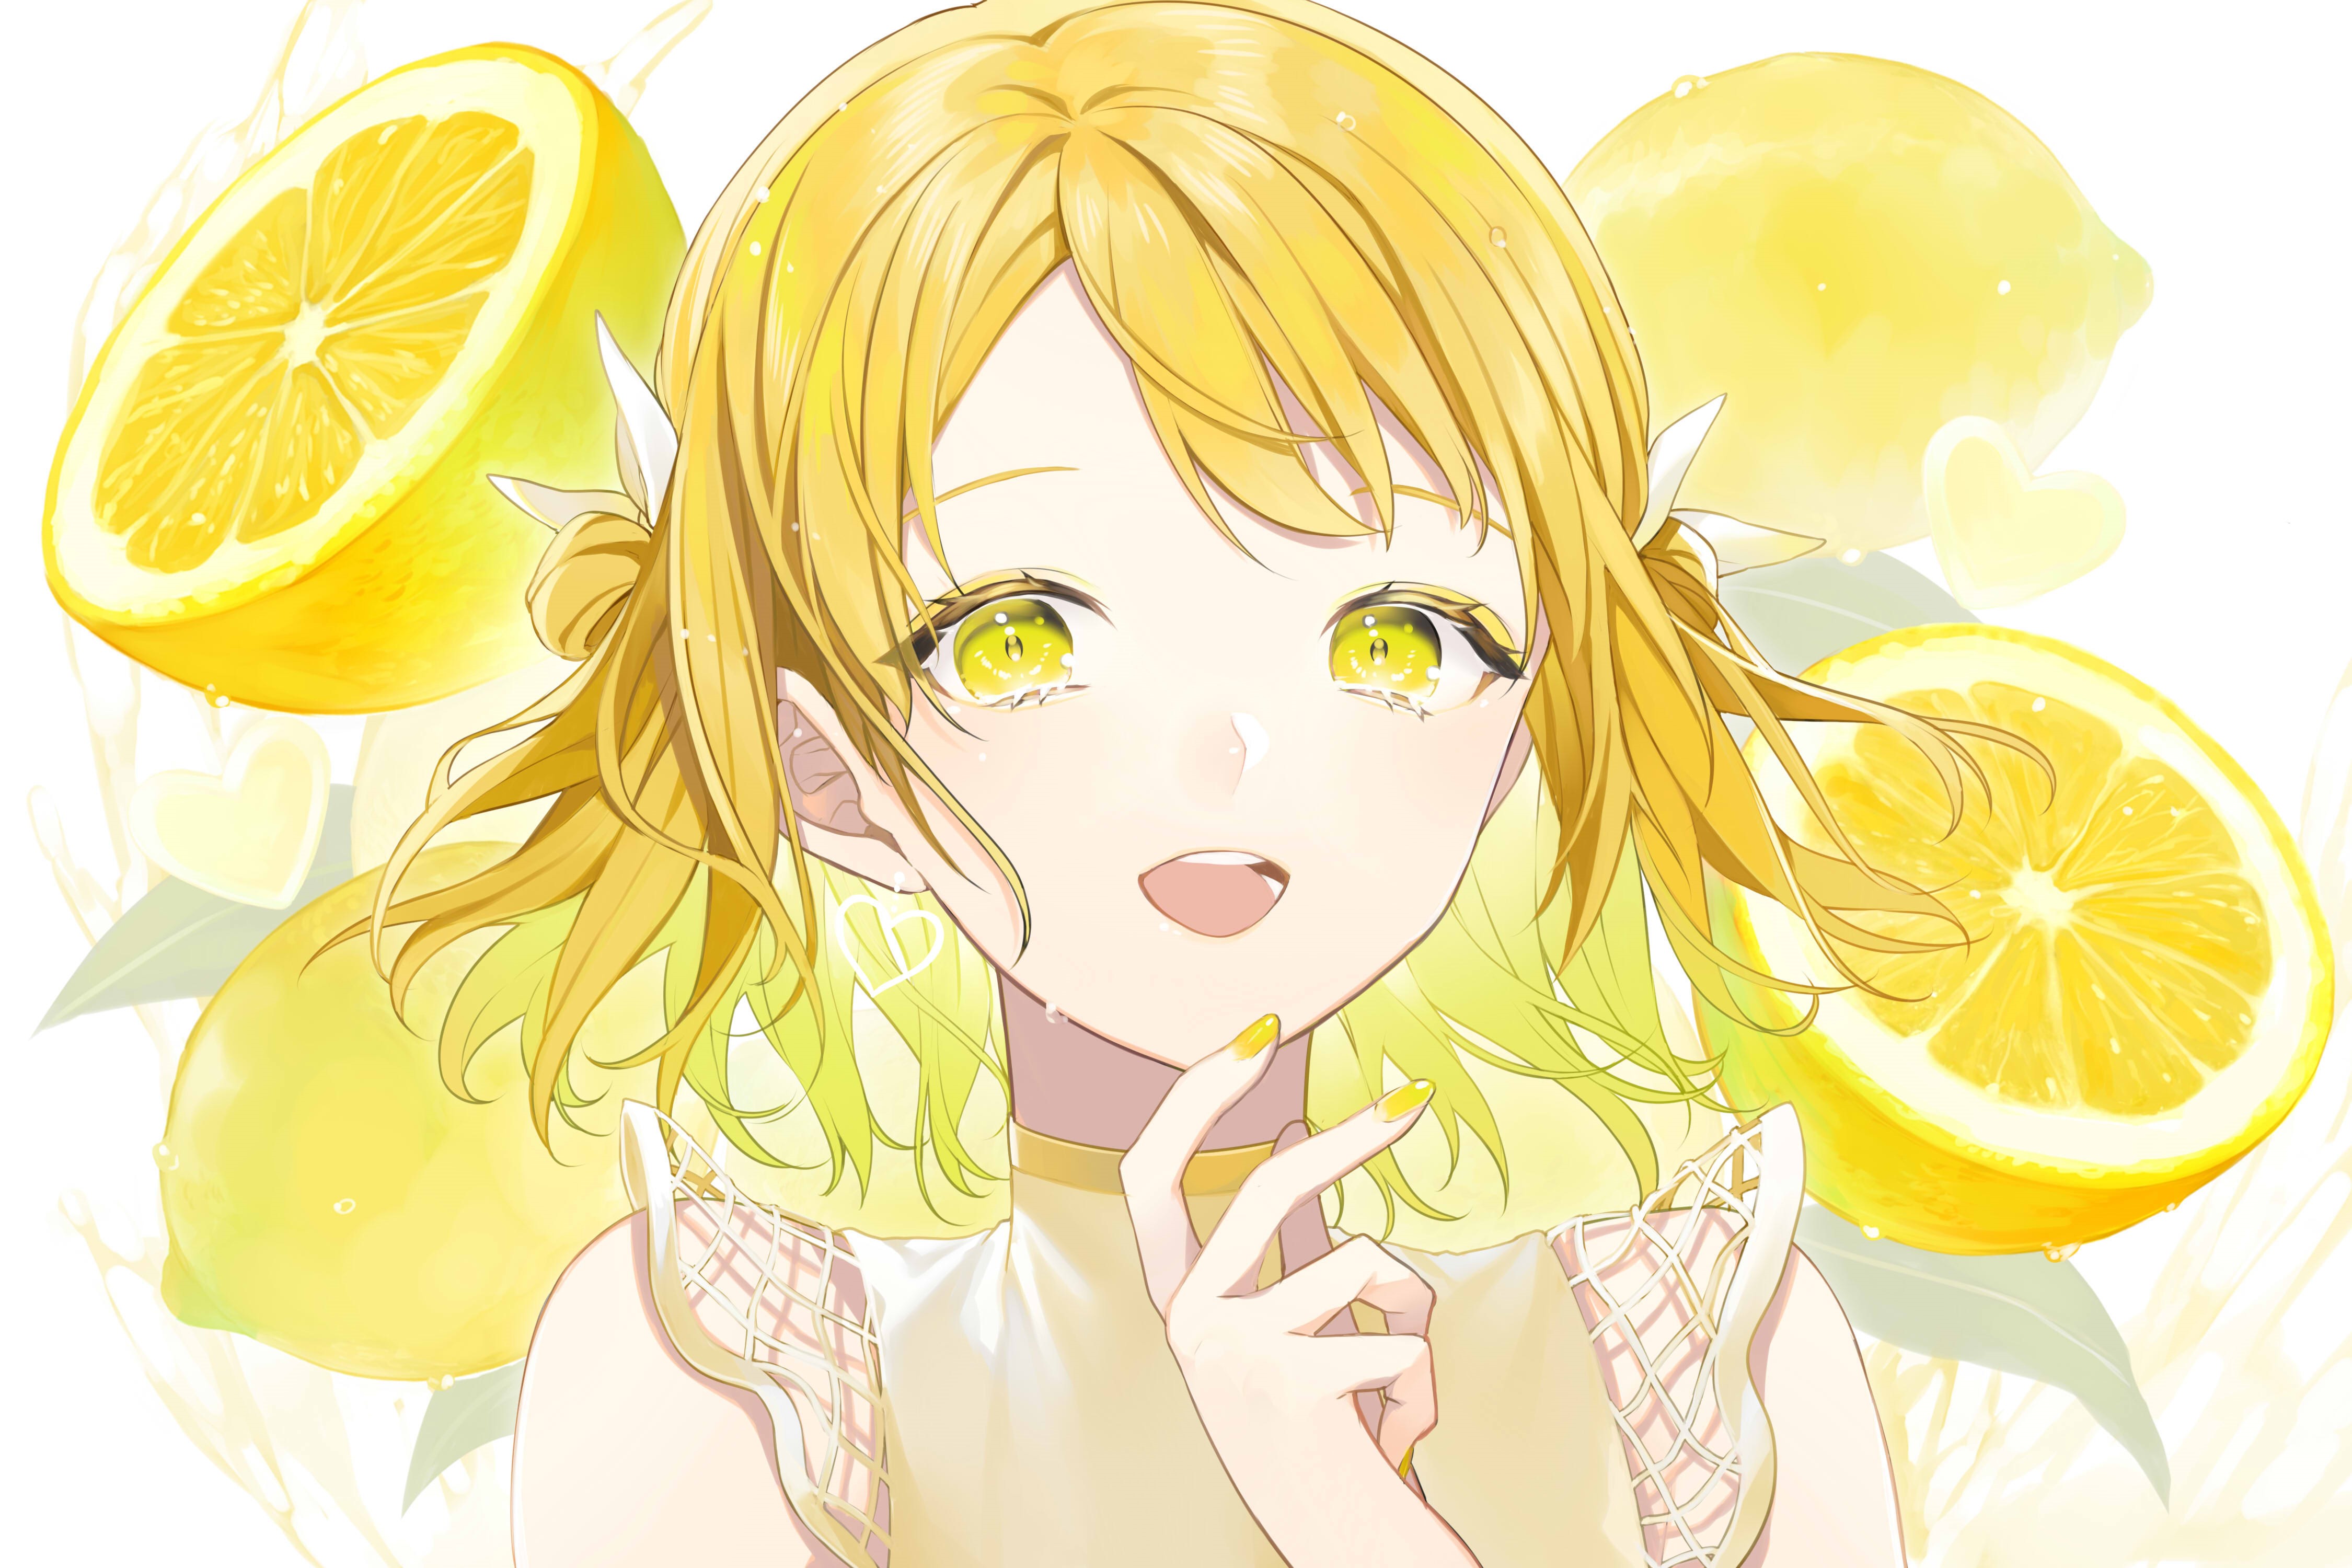 yellow, matching icons and anime - image #7310282 on Favim.com